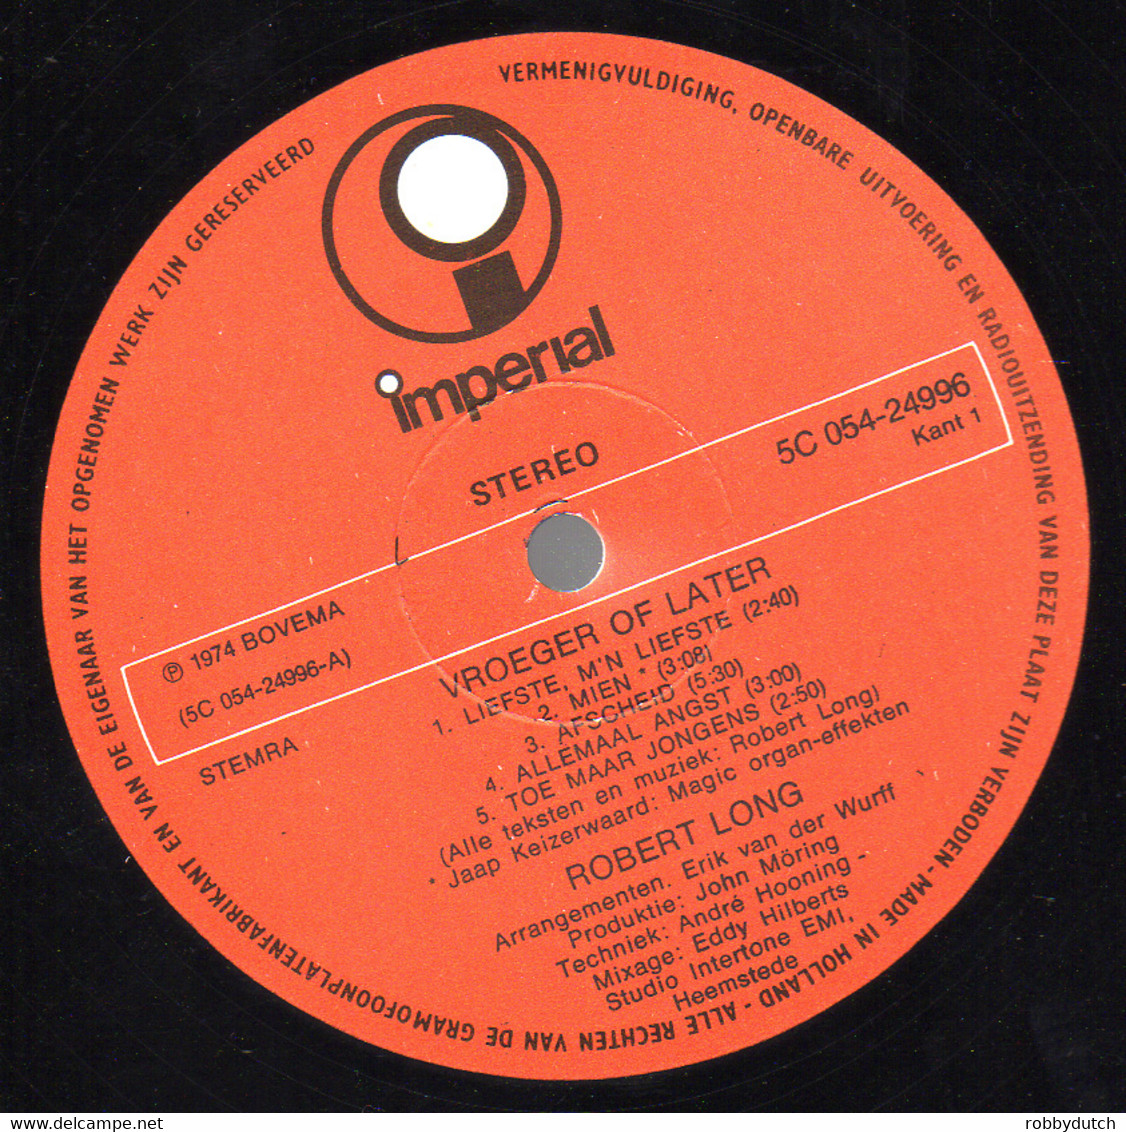 * LP * ROBERT LONG - VROEGER OF LATER (Holland 1974) - Altri - Fiamminga